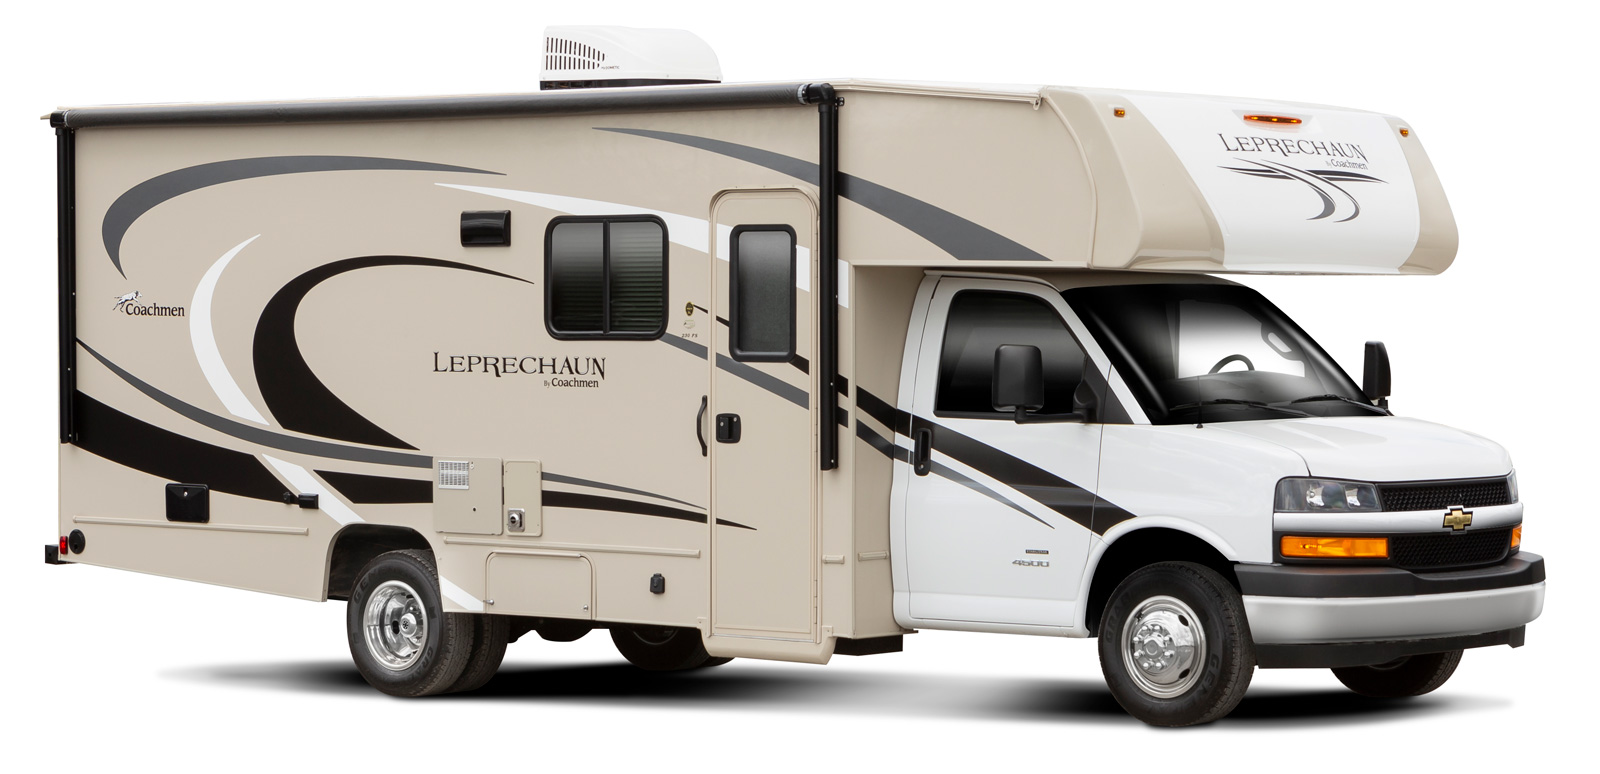 leprechaun camper travel trailer